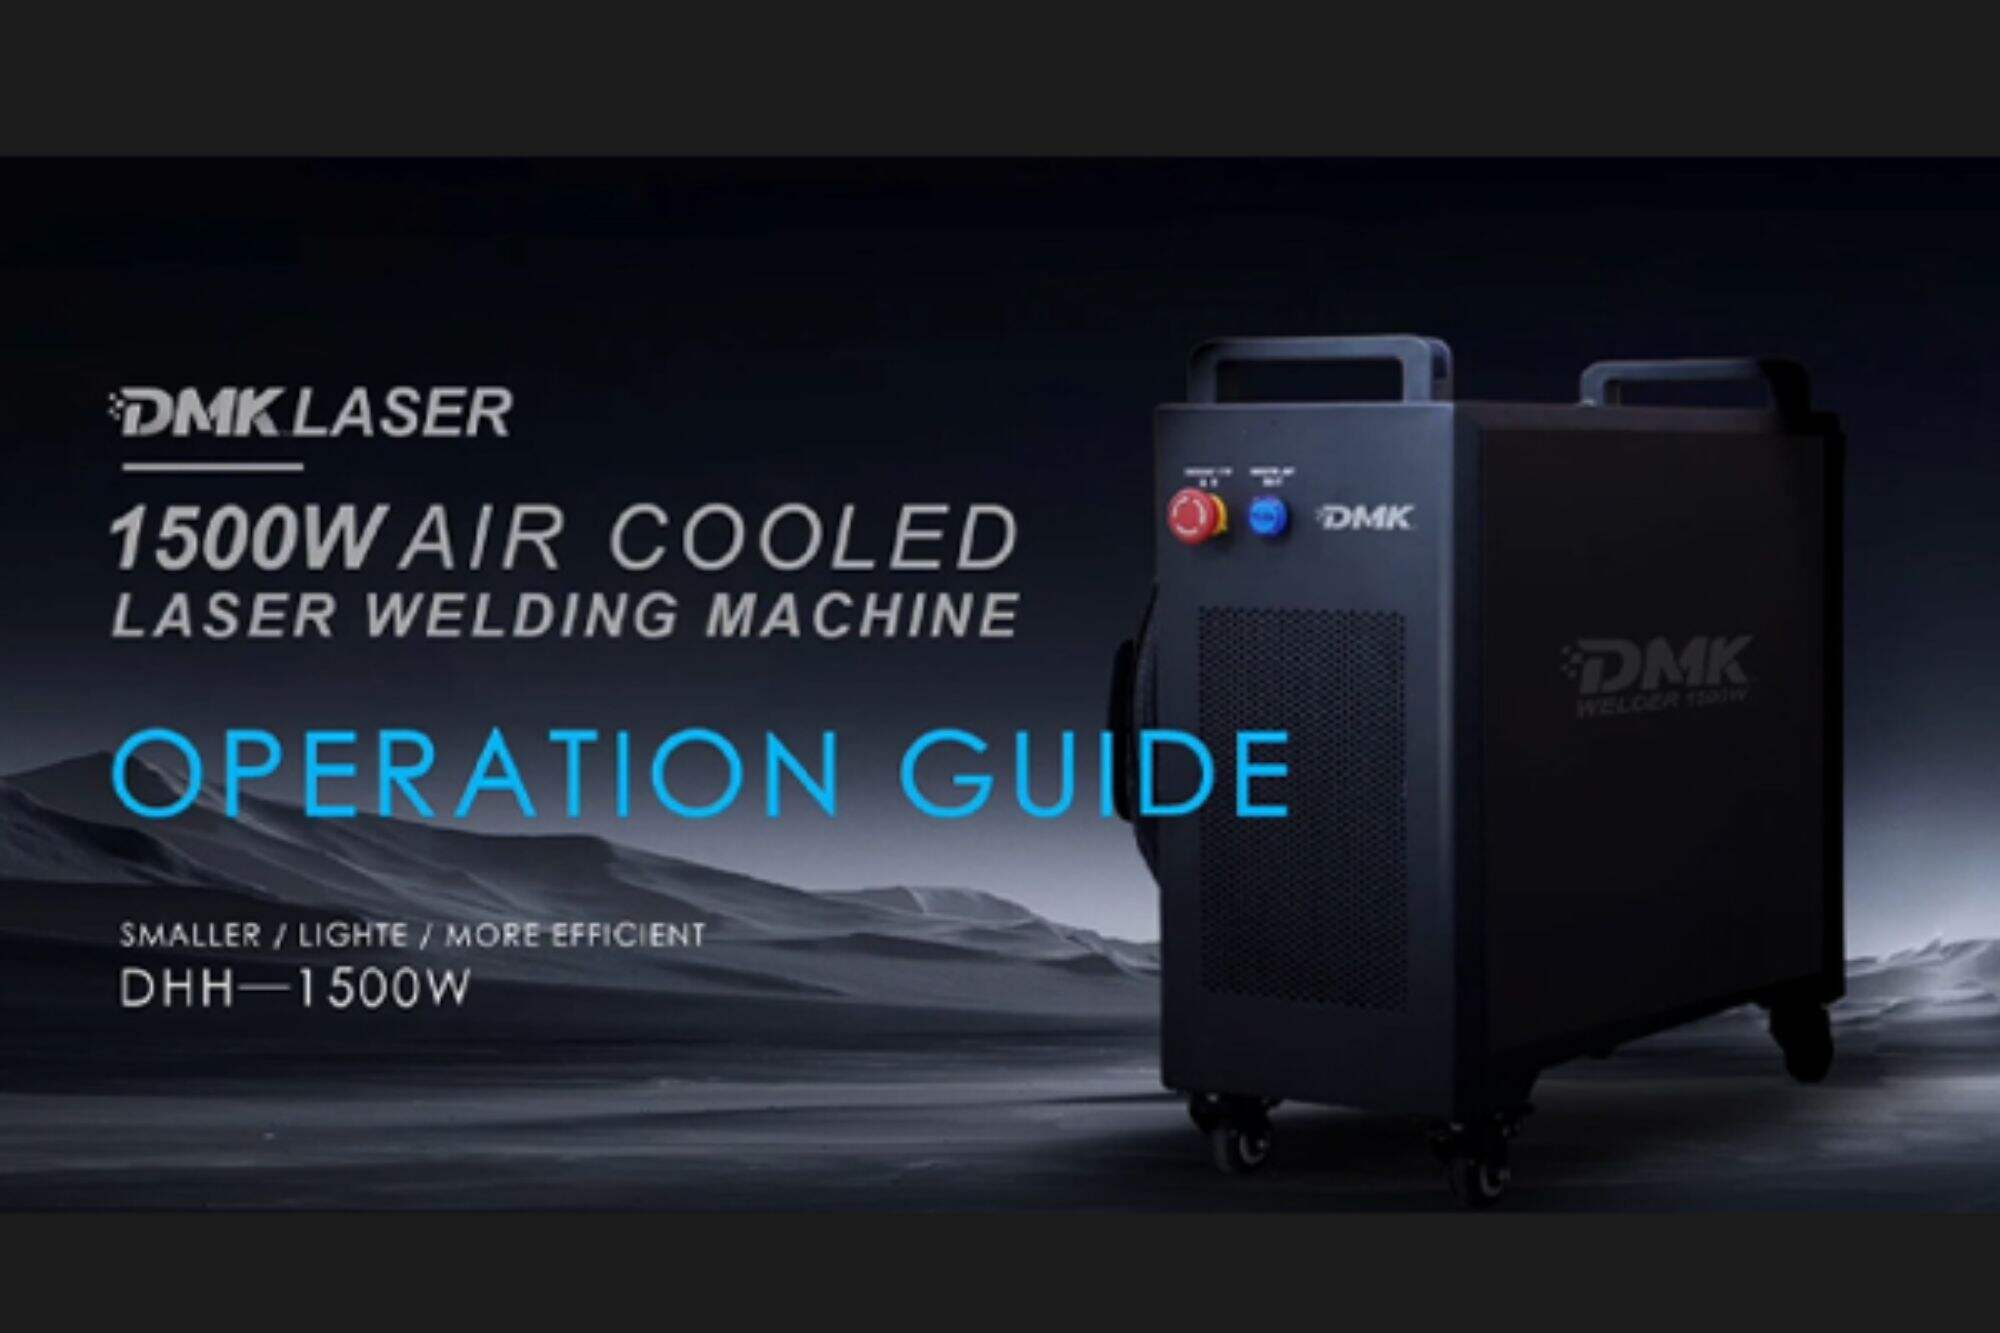 Návod k obsluze ručního vzduchem chlazeného laserového svářecího stroje DMK